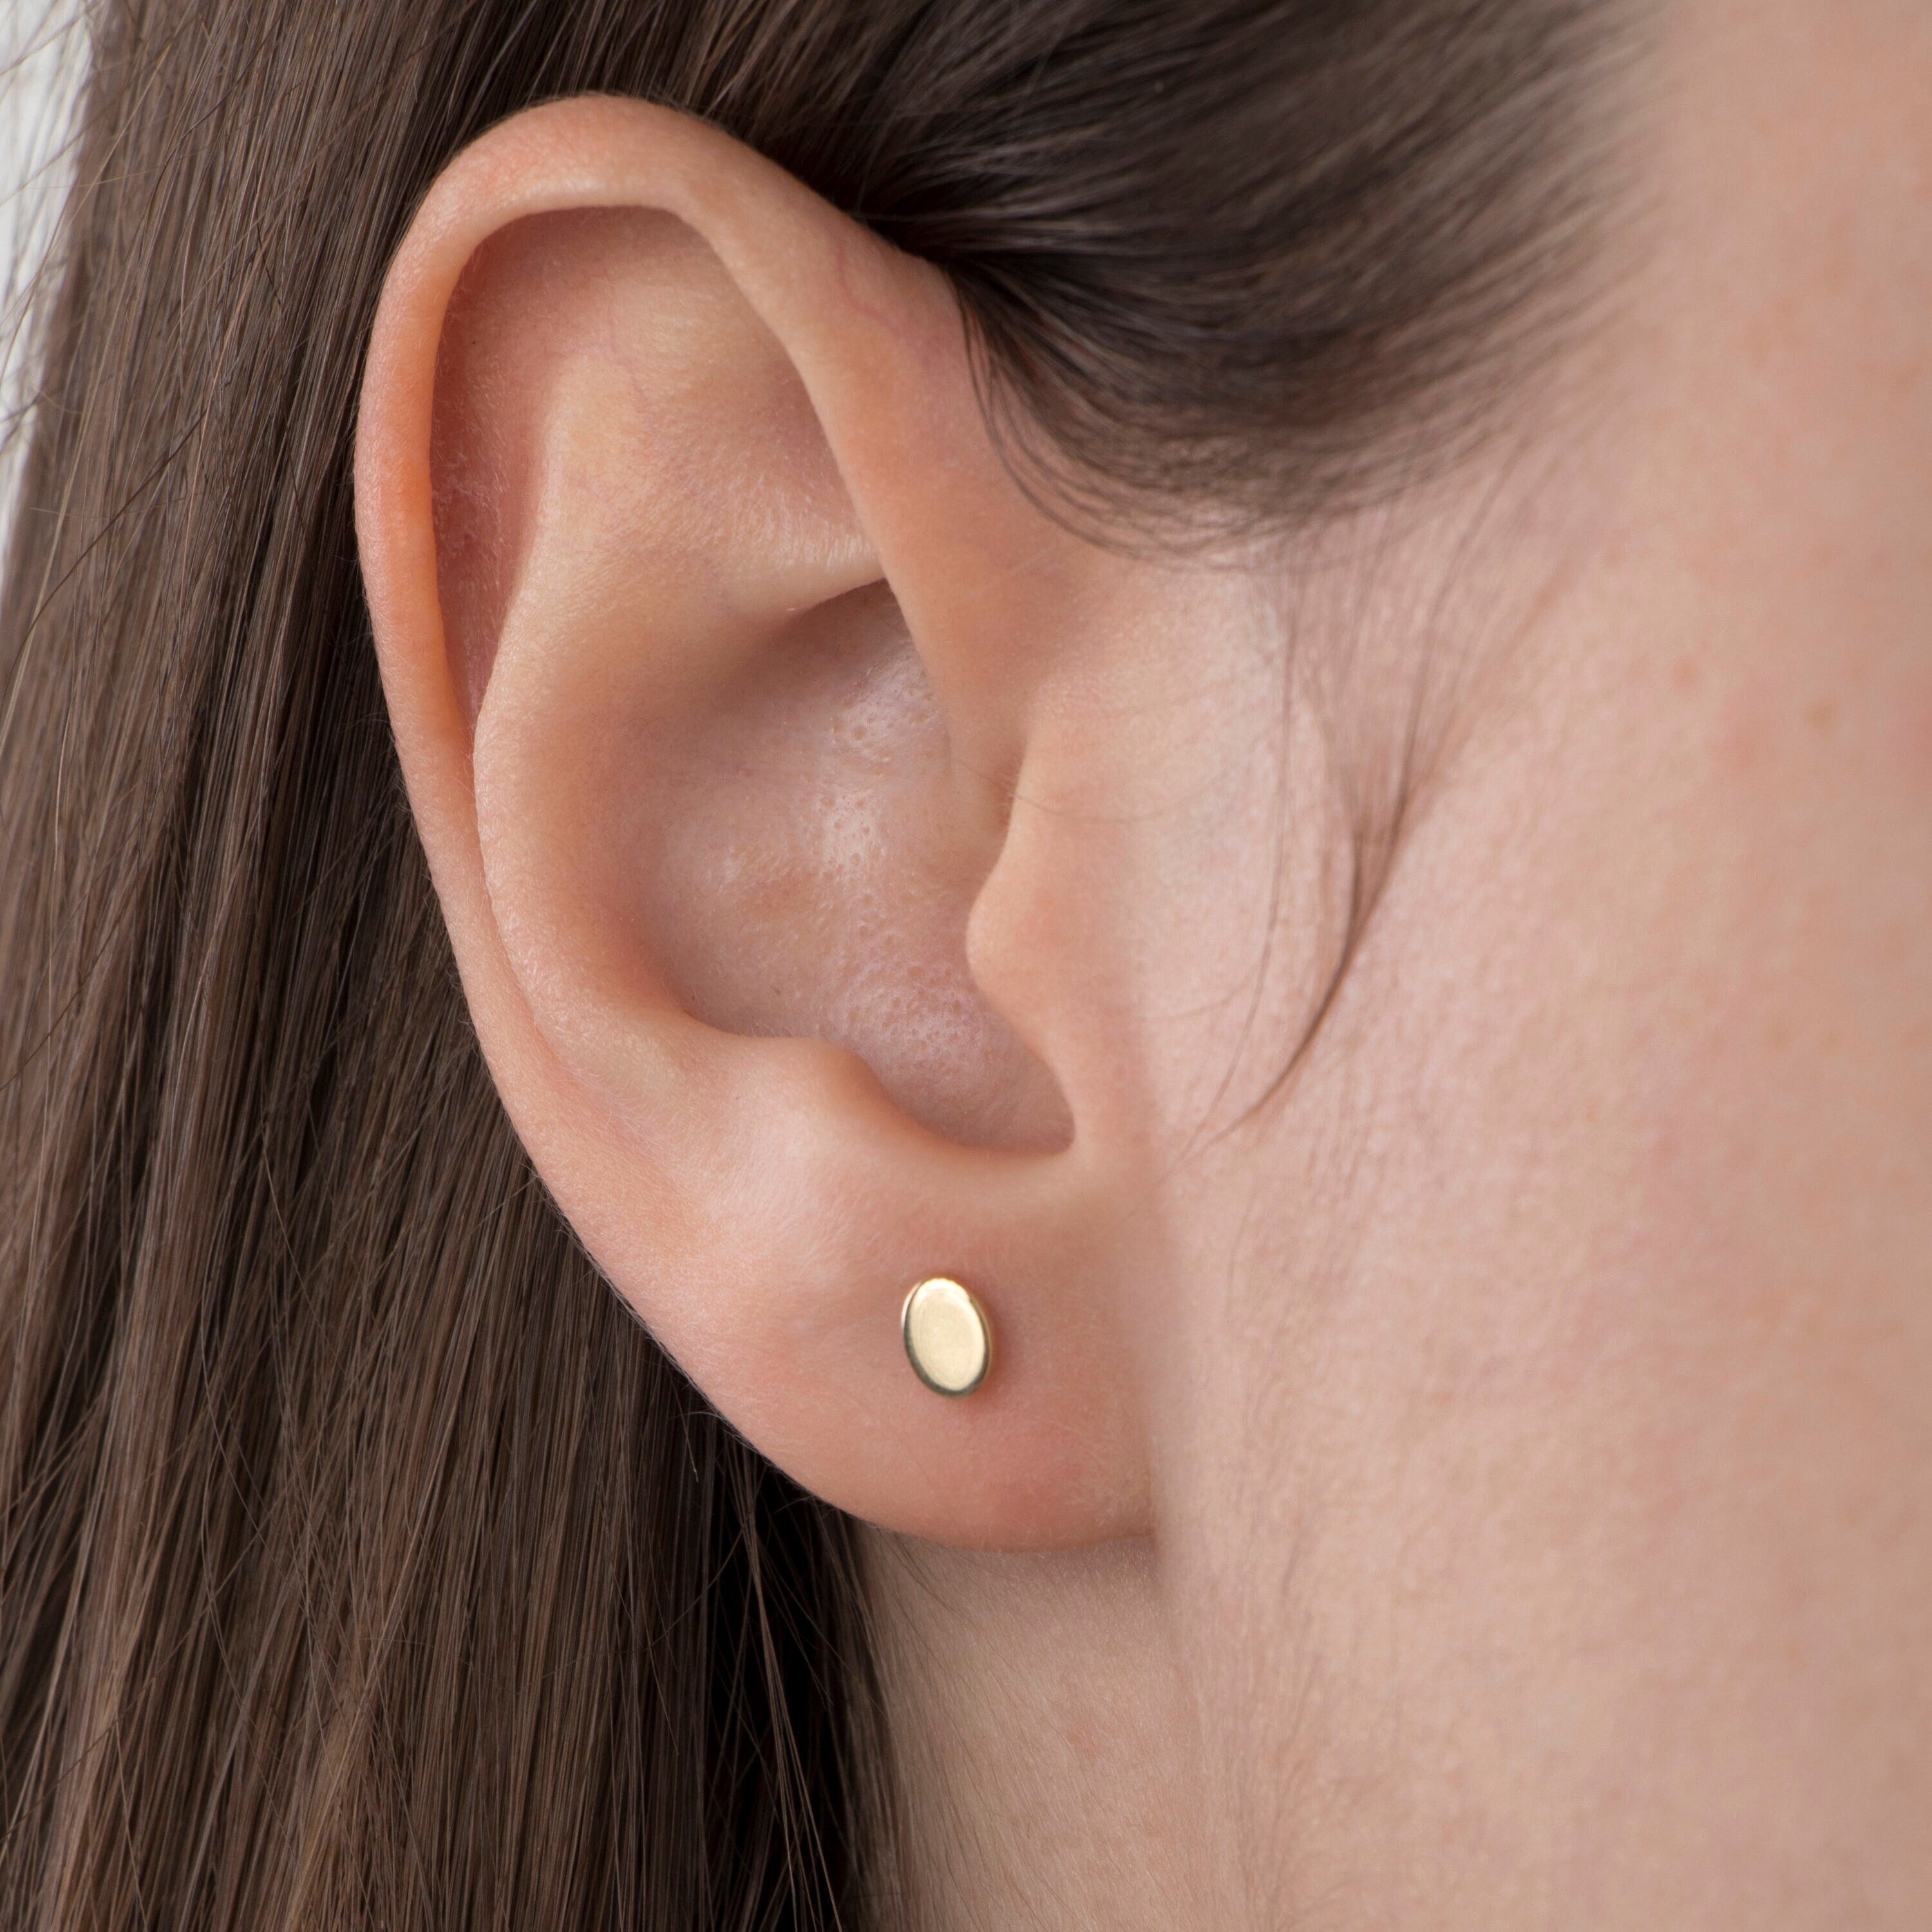 Oval Stud Earrings in 14K Gold